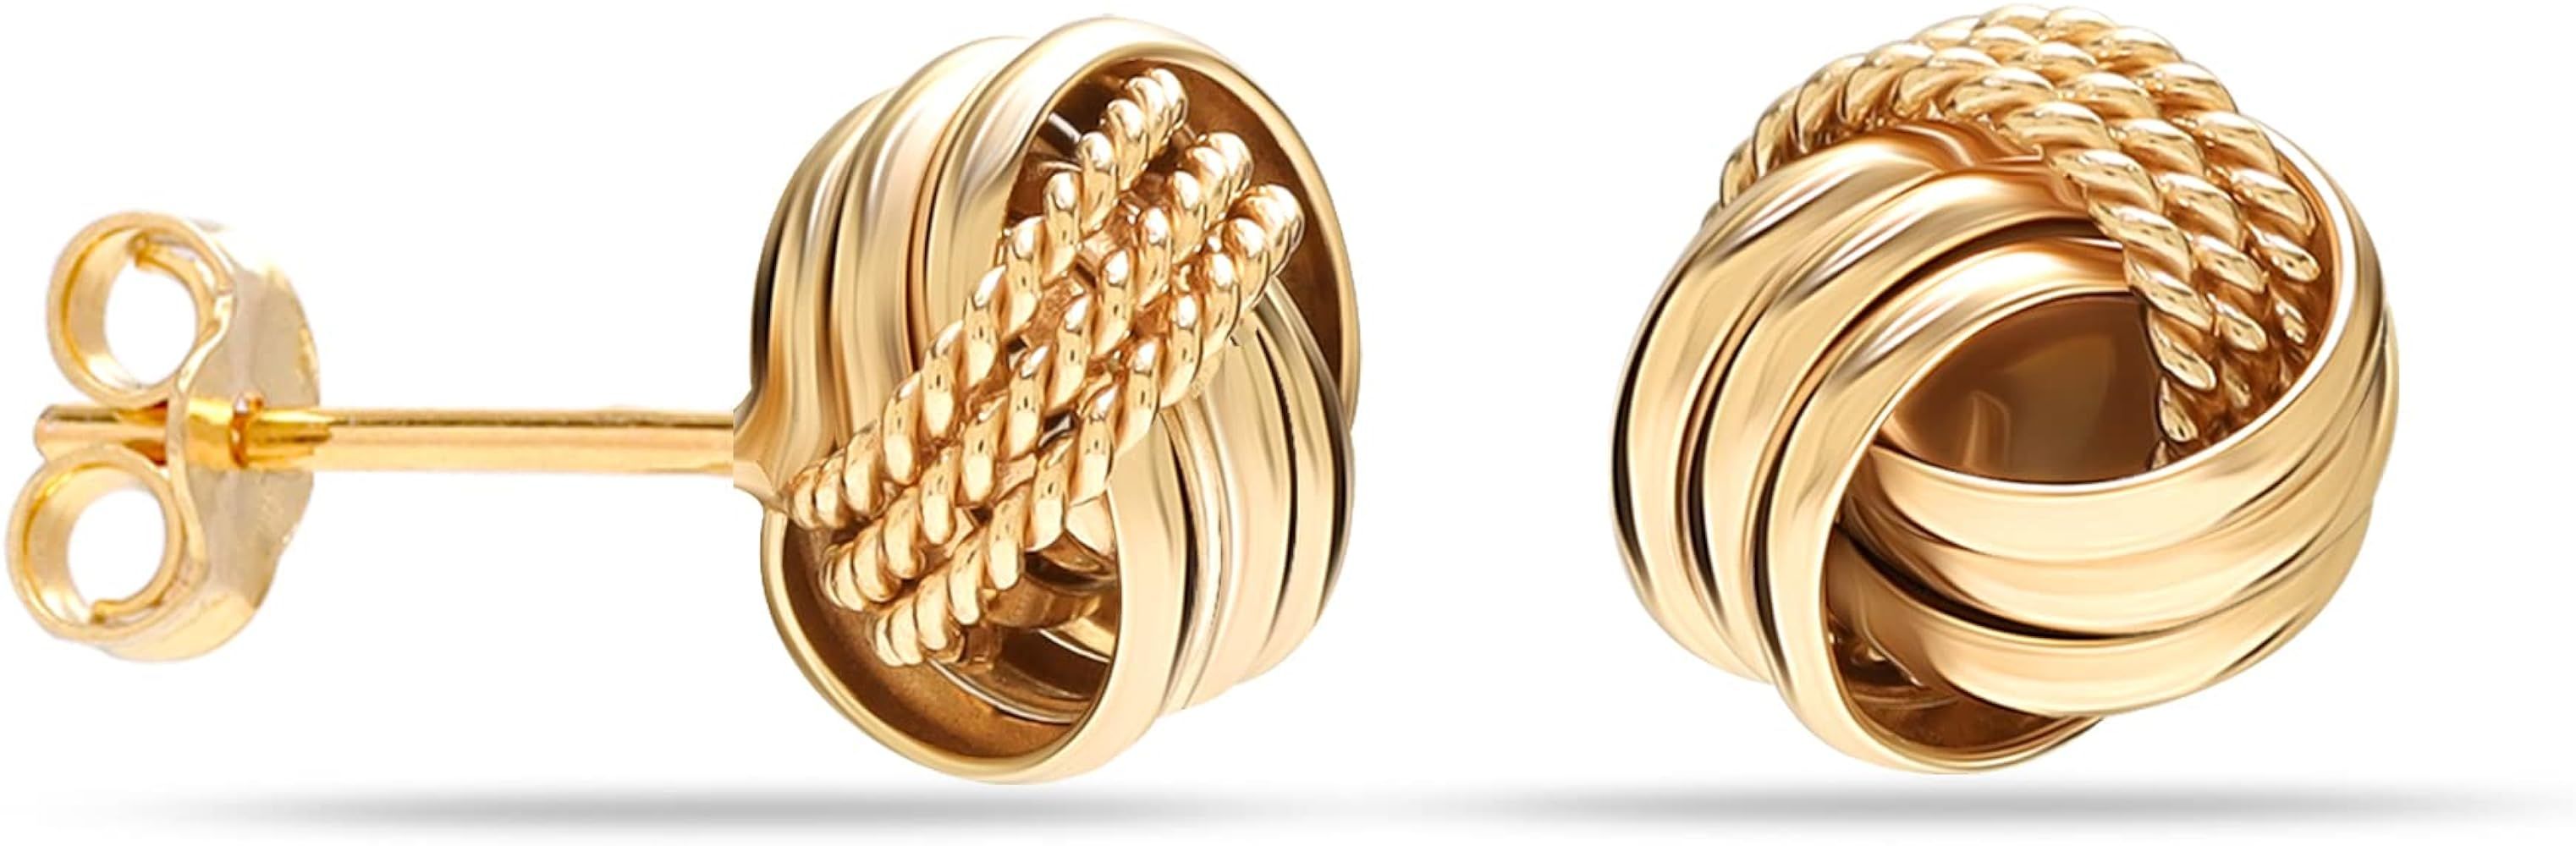 LeCalla 925 Sterling Silver Knot Stud Earrings Jewelry | Italian Design Love Knot Stud Earring | ... | Amazon (US)